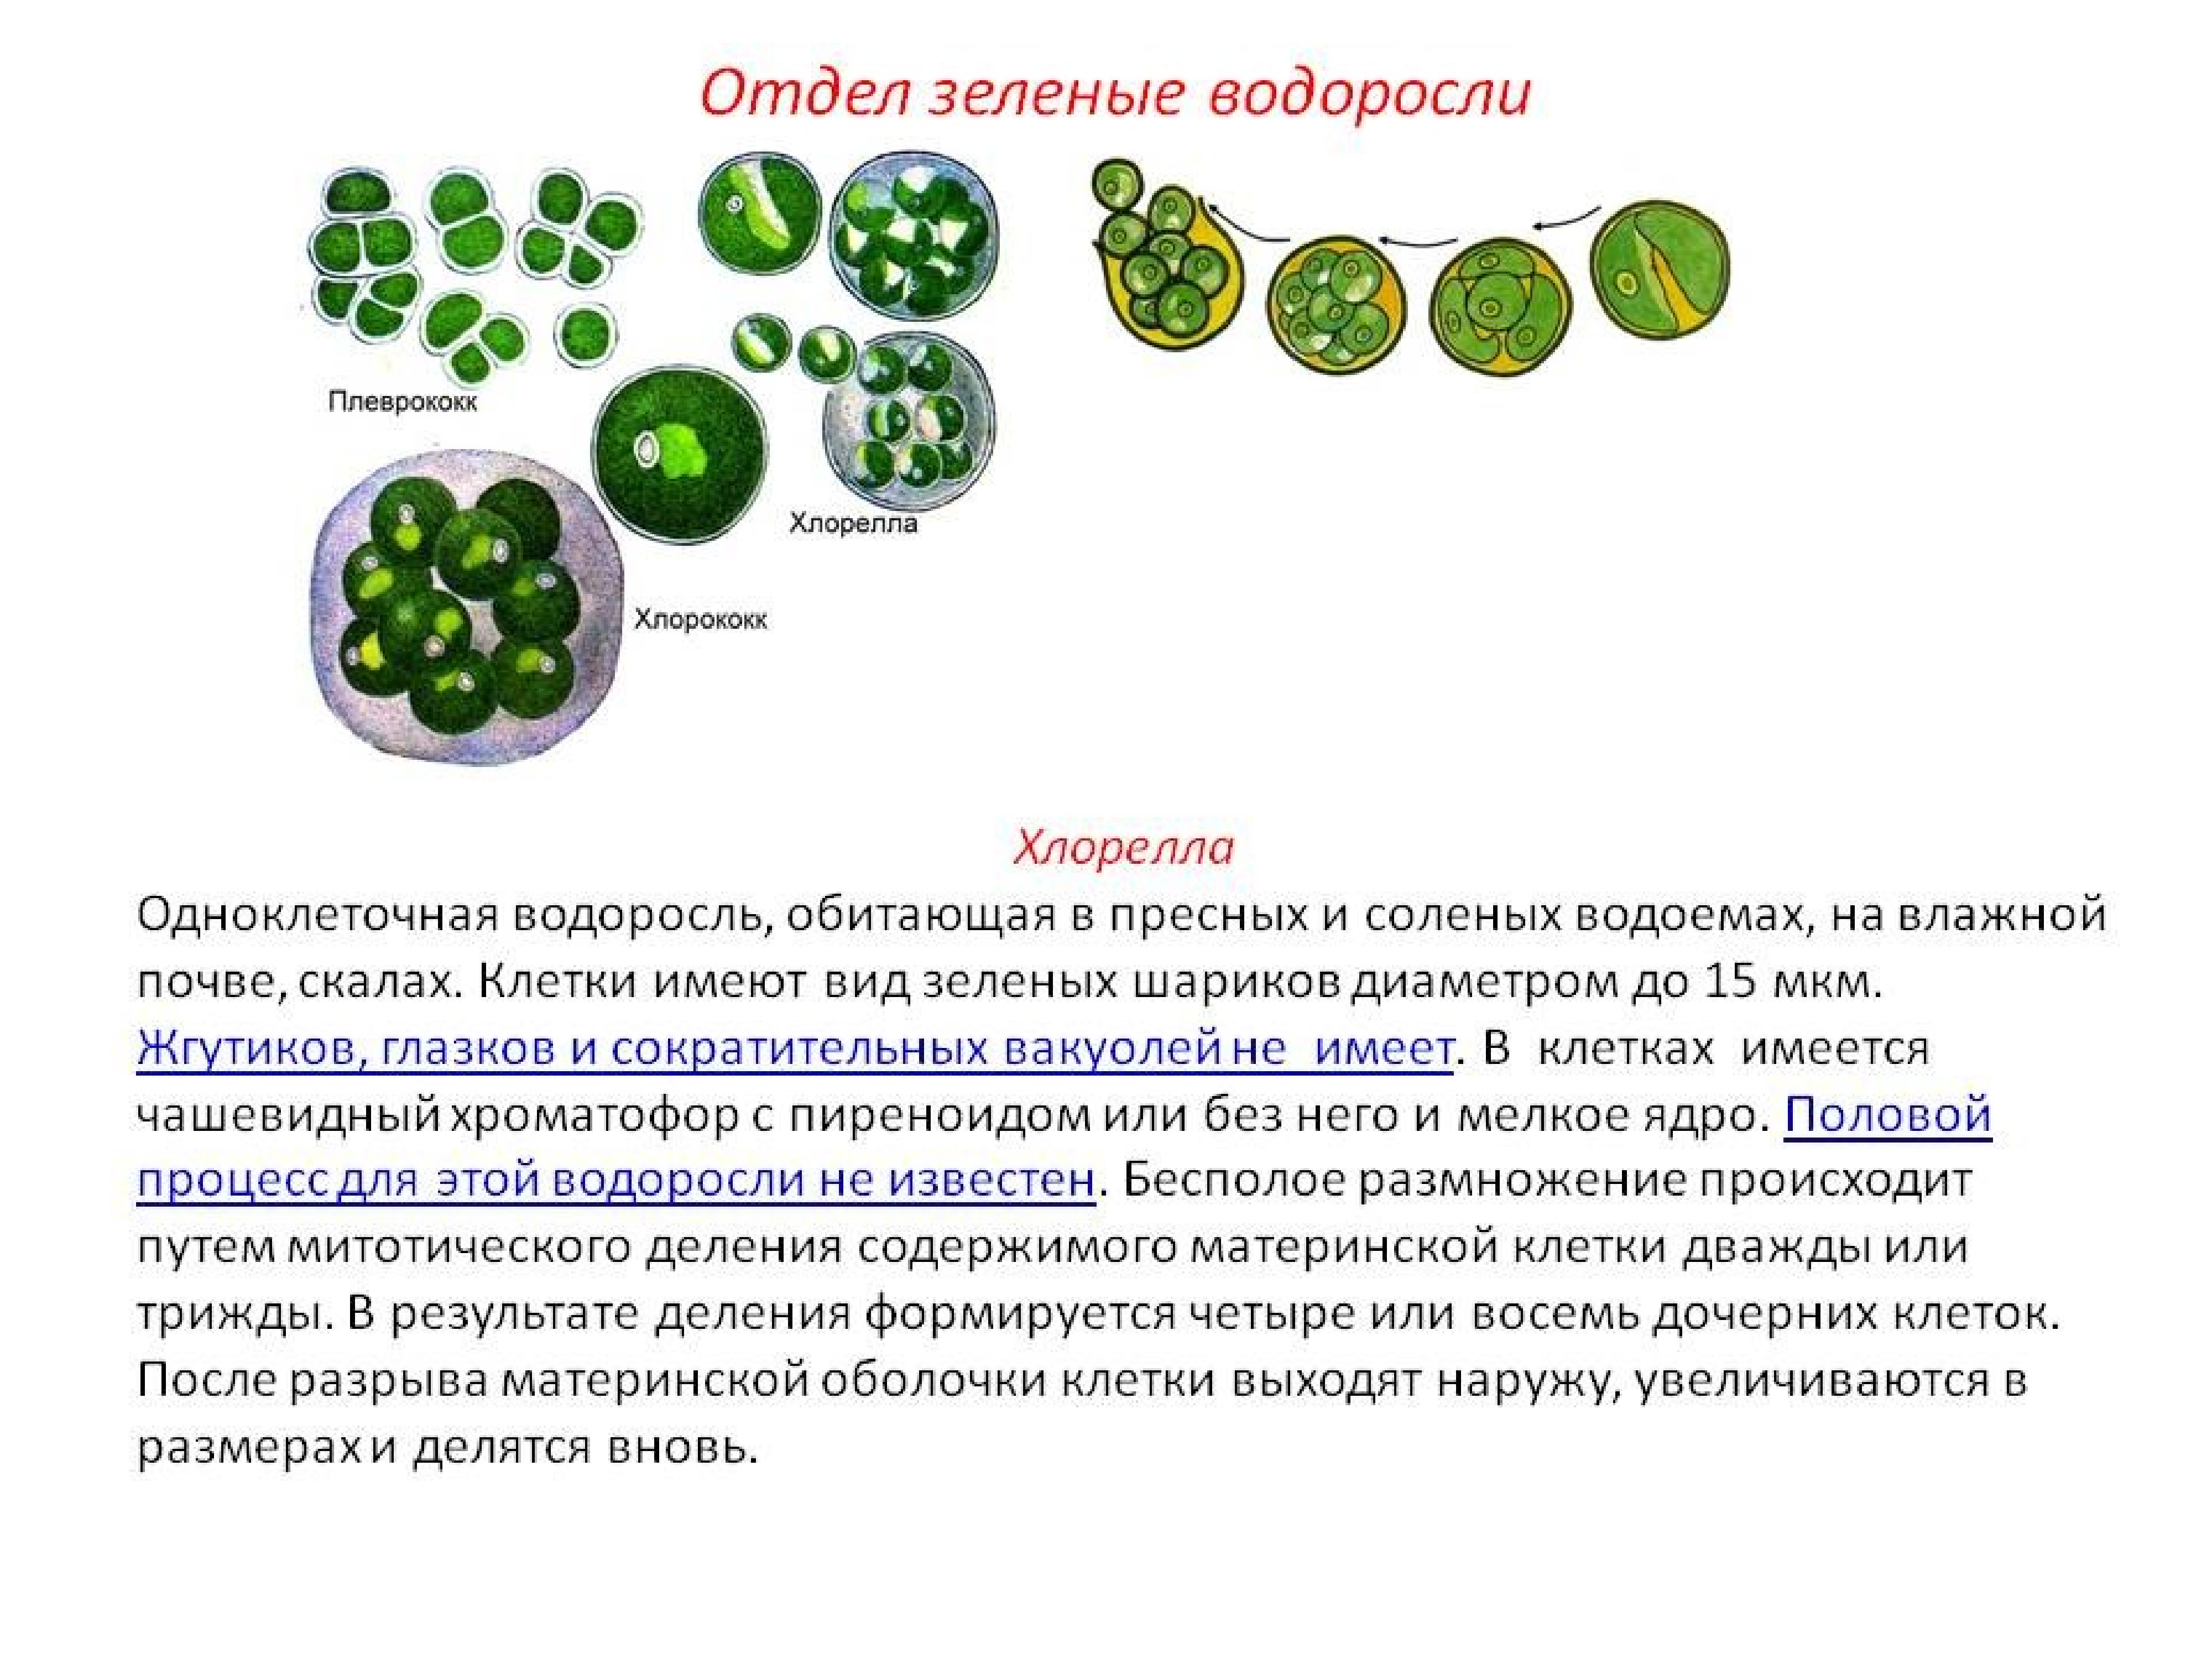 Культивирование одноклеточных водорослей. Зеленые водоросли хлорелла. Одноклеточные растения хлорелла. Одноклеточная водоросль хлорелла. Зеленые водоросли хлореллы строение.